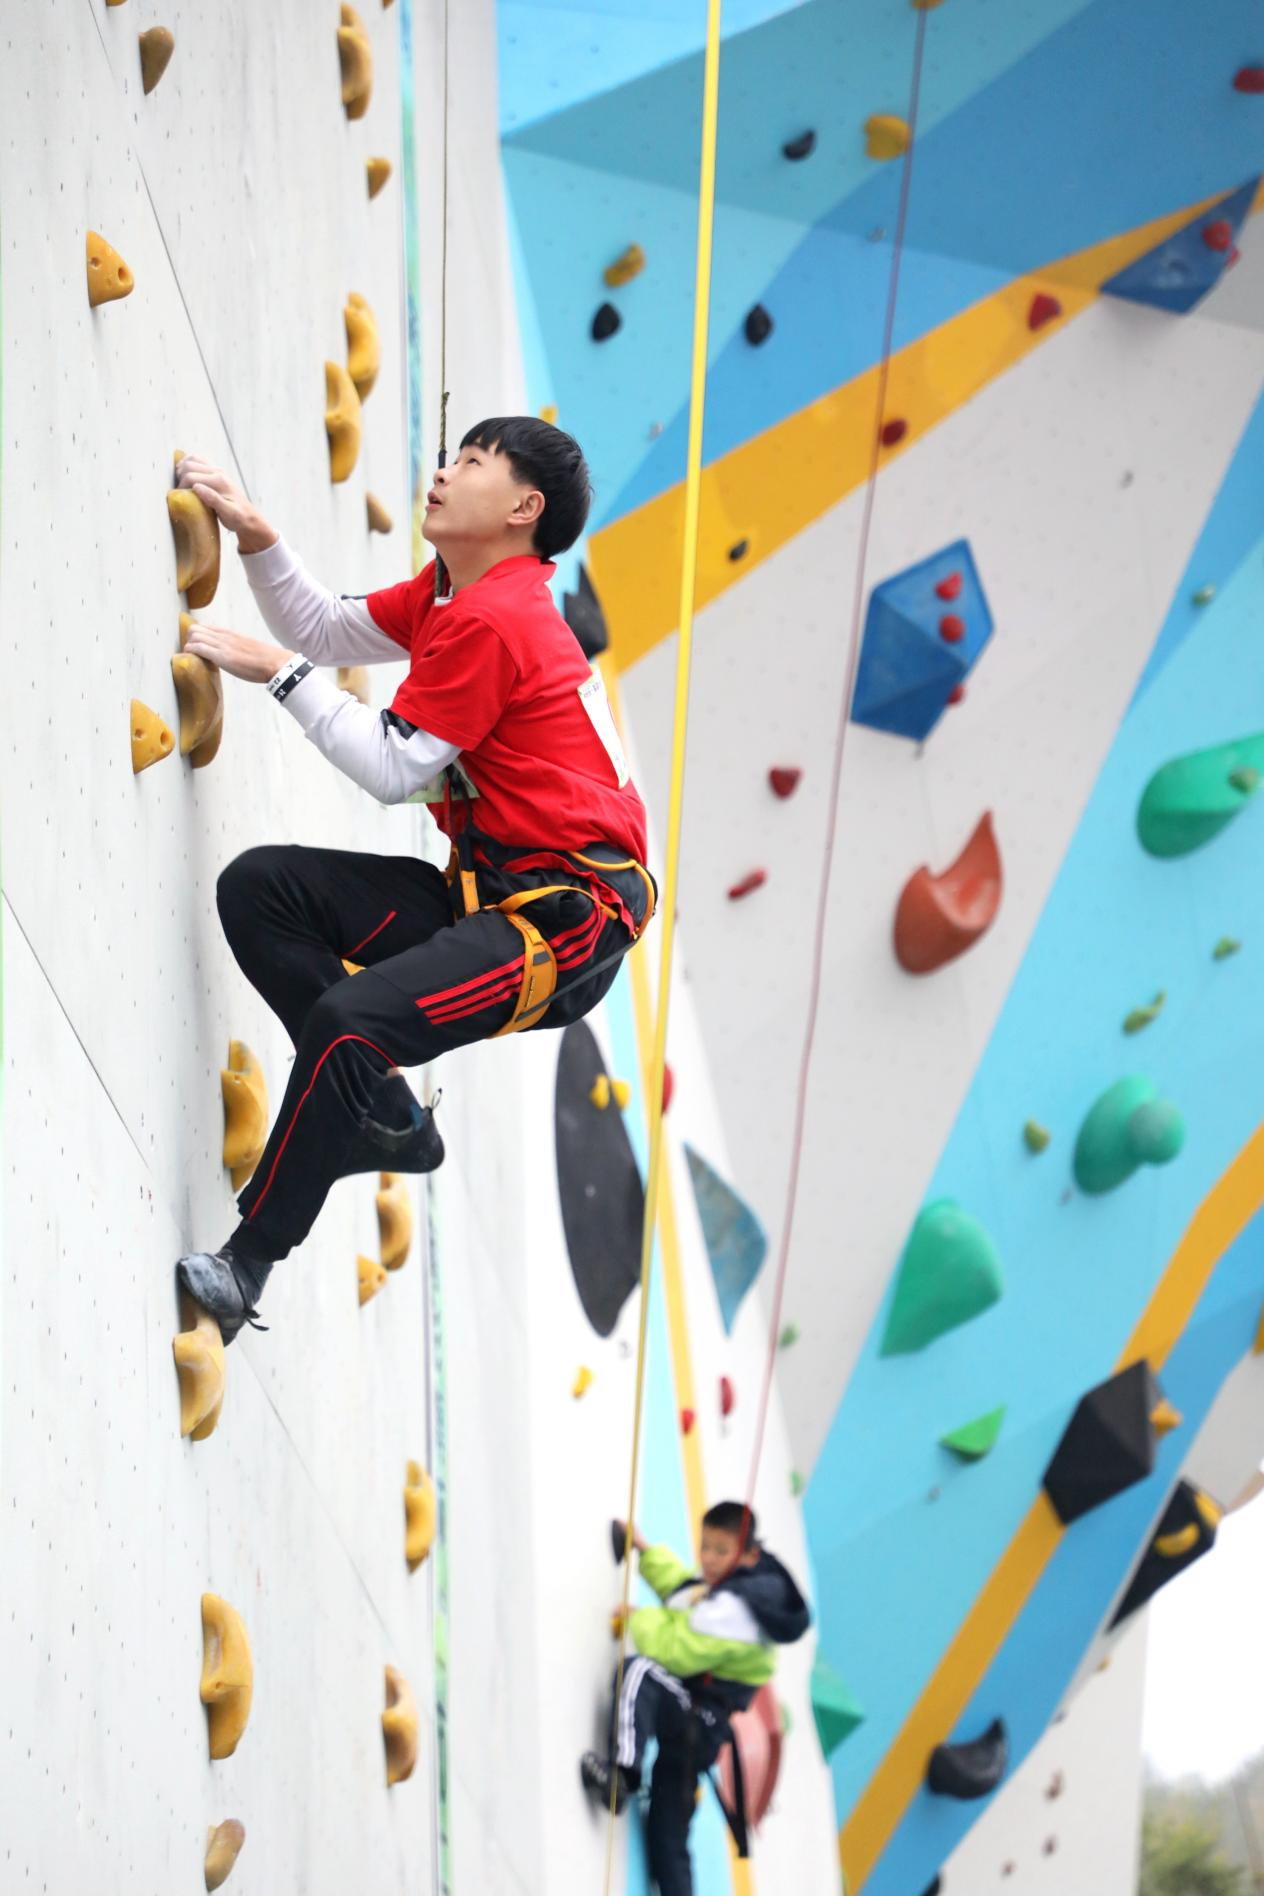 赛况 | 上海市第二届市民运动会攀岩总决赛 暨上海市第四届攀岩锦标赛火热举行中